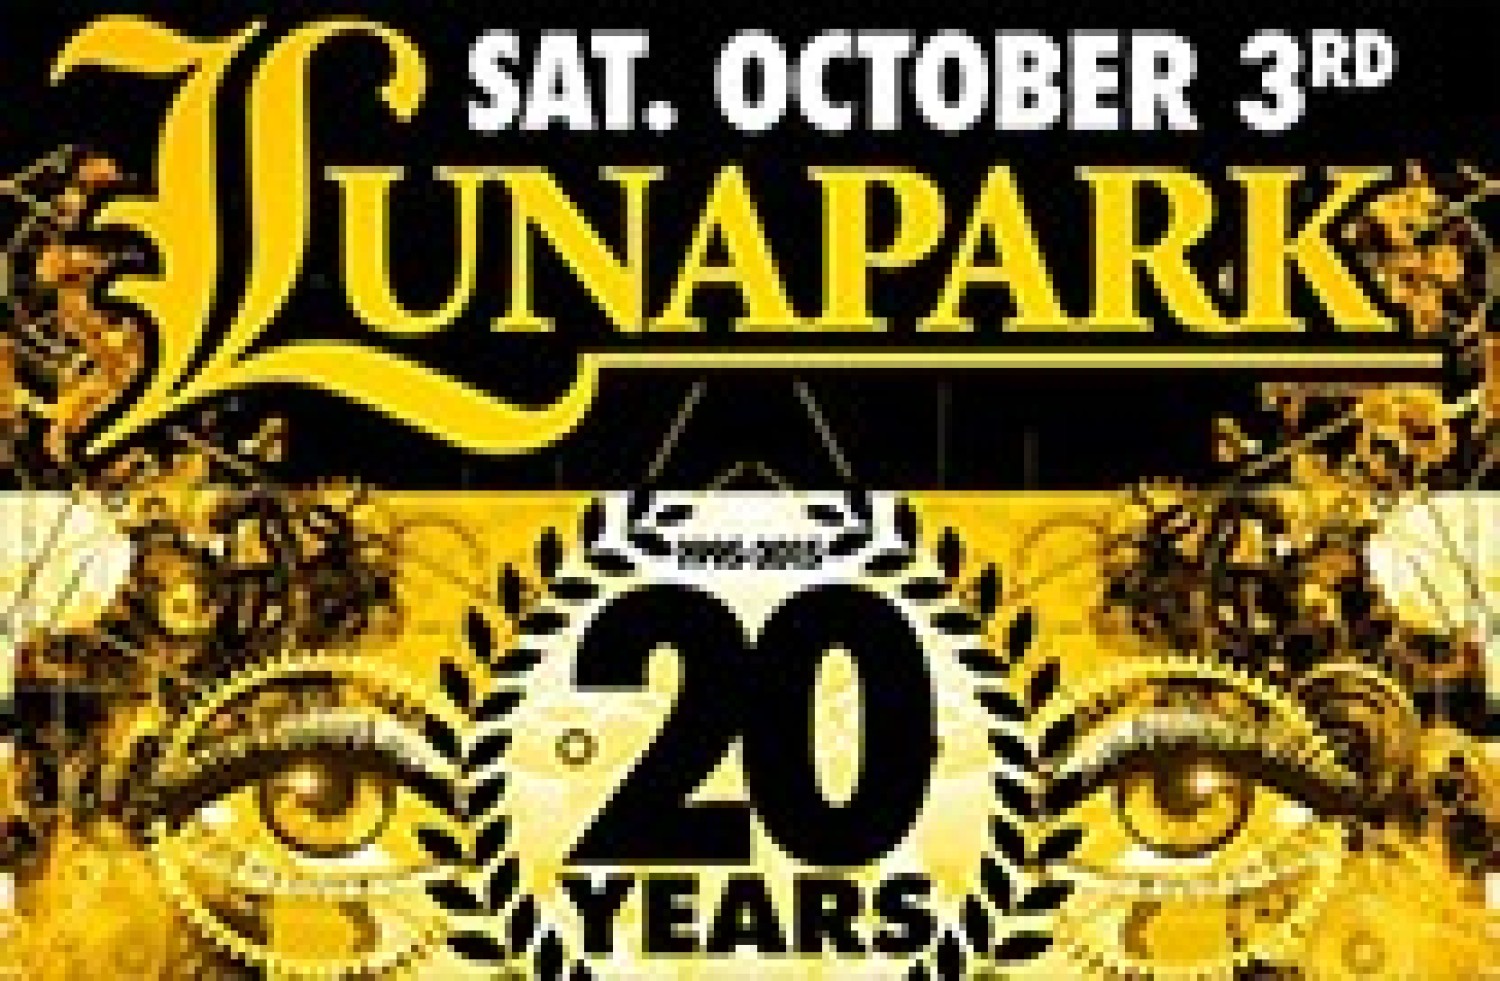 Party nieuws: Lunapark viert haar 20e verjaardag in het WTC R'dam